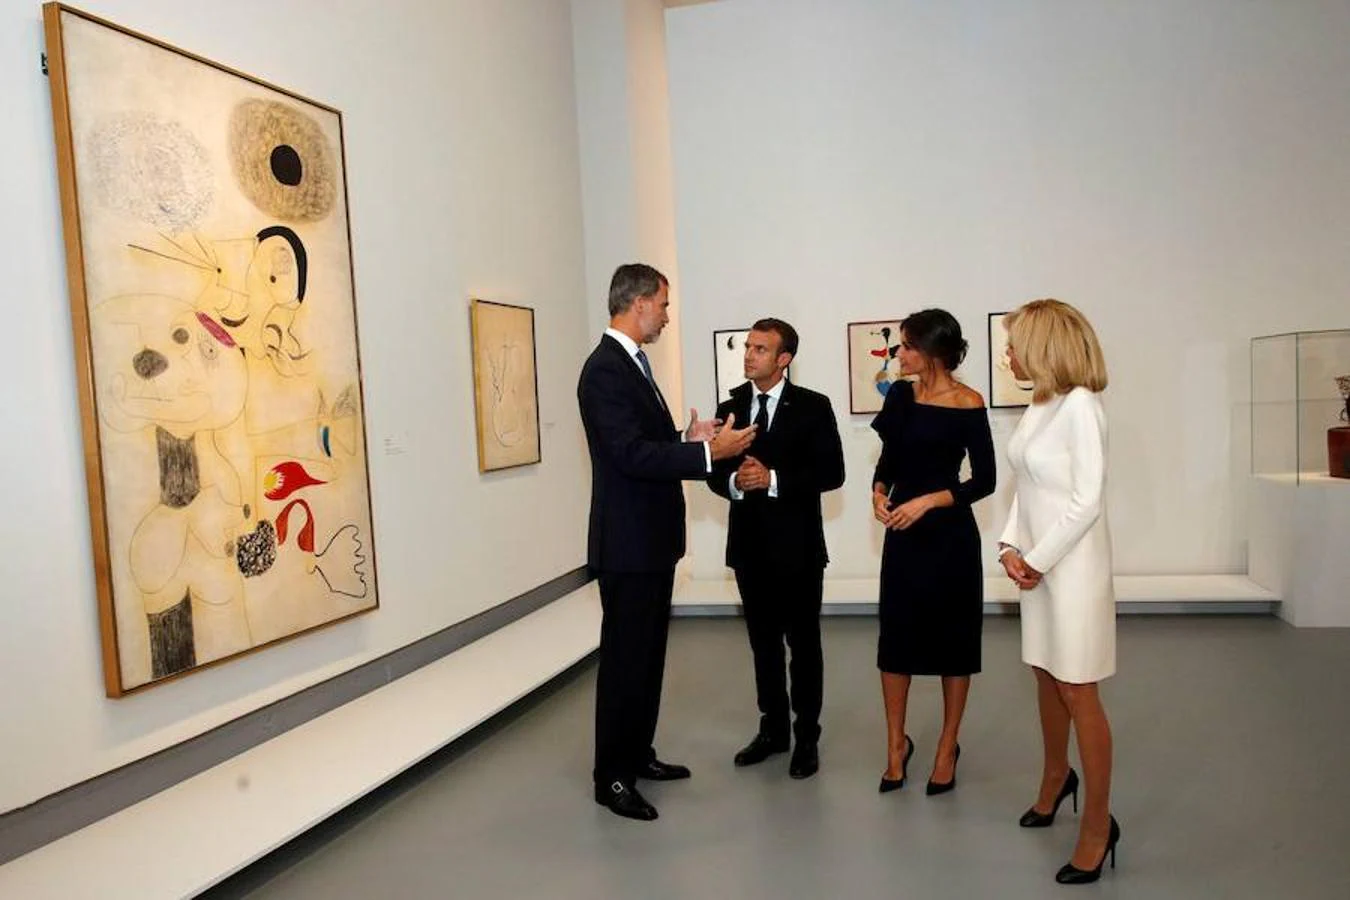 El hilo conductor de la exposición es el sueño, recordándonos que Miró fue un soñador subversivo. 